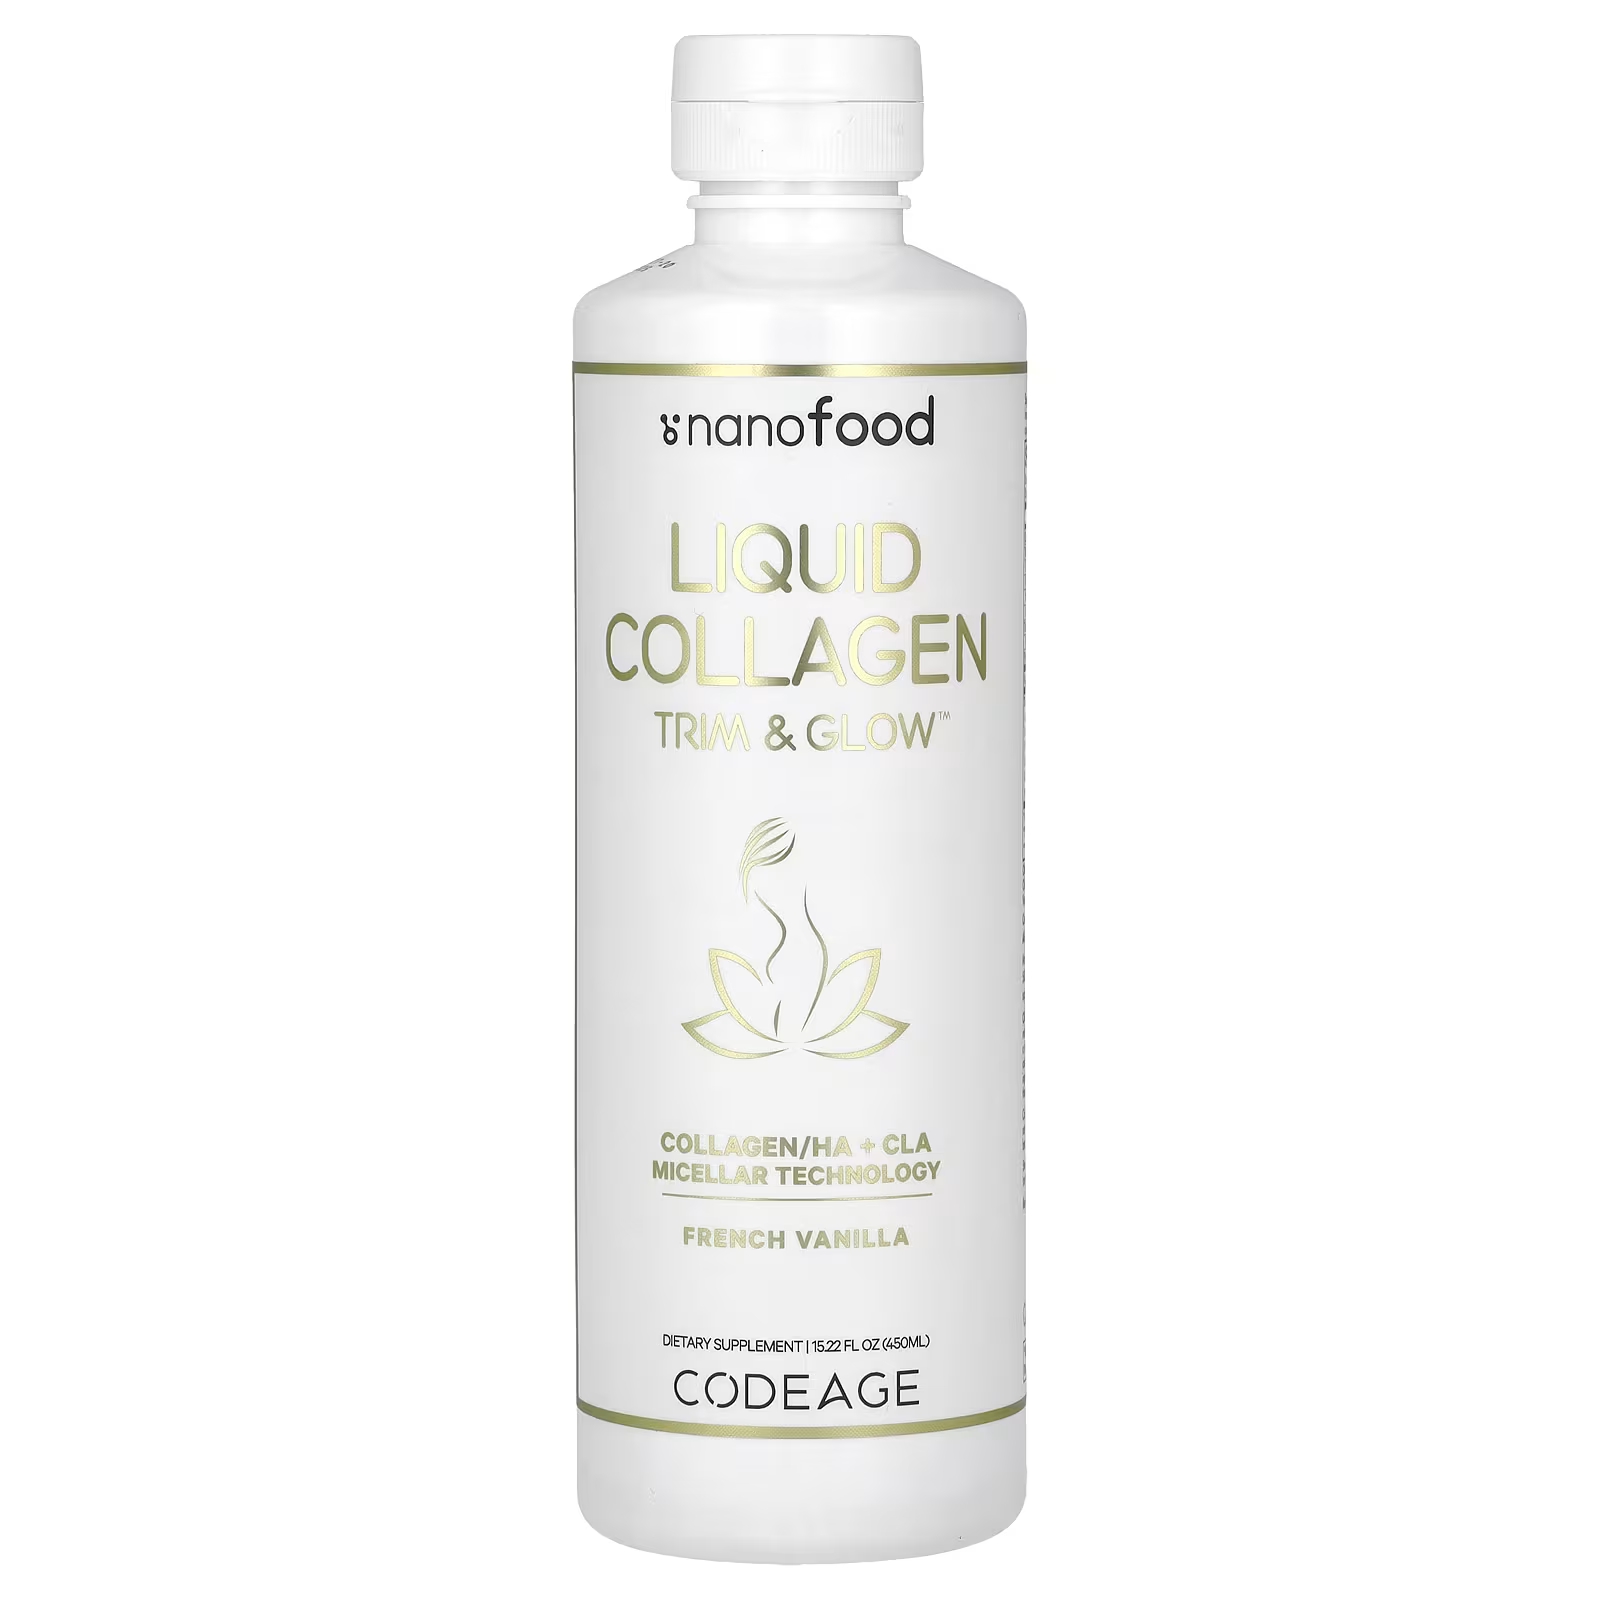 Codeage Nanofood Liquid Collagen Trim & Glow, французская ваниль, 15,22 жидких унции (450 мл) ежедневная формула codeage nanofood для липосомальной доставки незаменимых витаминов омега 3 30 пакетиков